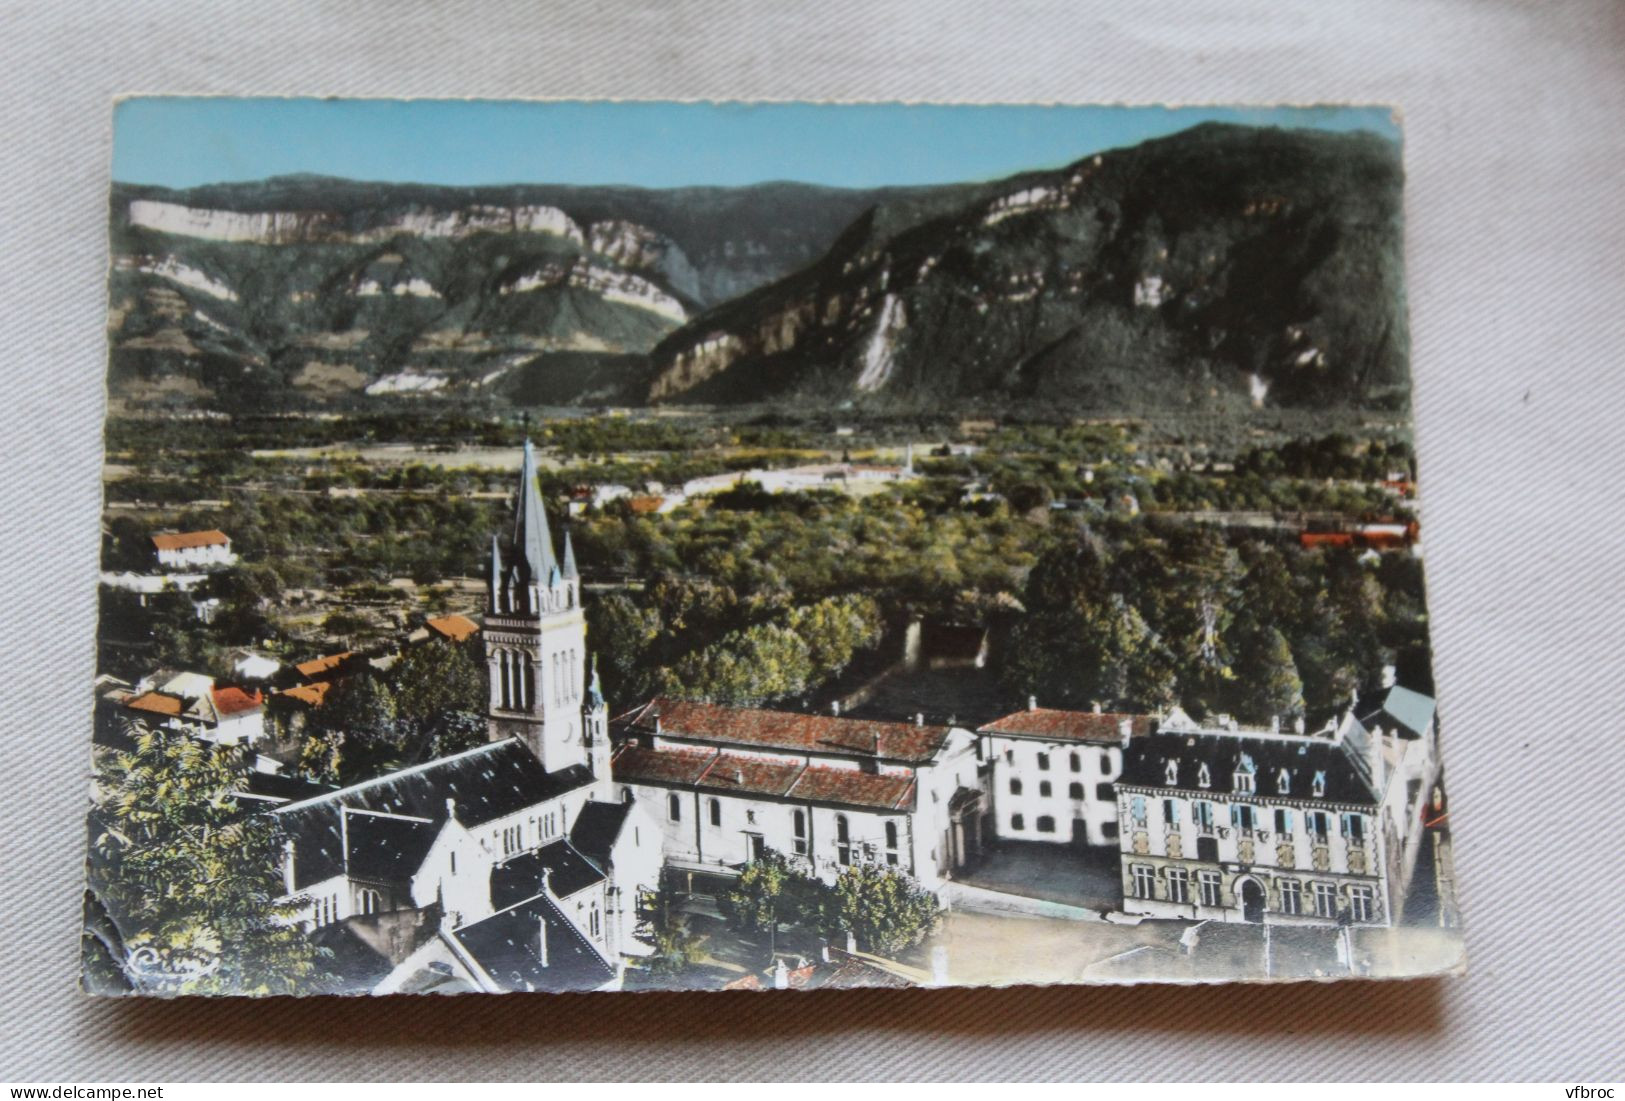 Cpm 1973, Vinay, L'église, La Mairie Et La Salle Des Fêtes, Isère 38 - Vinay